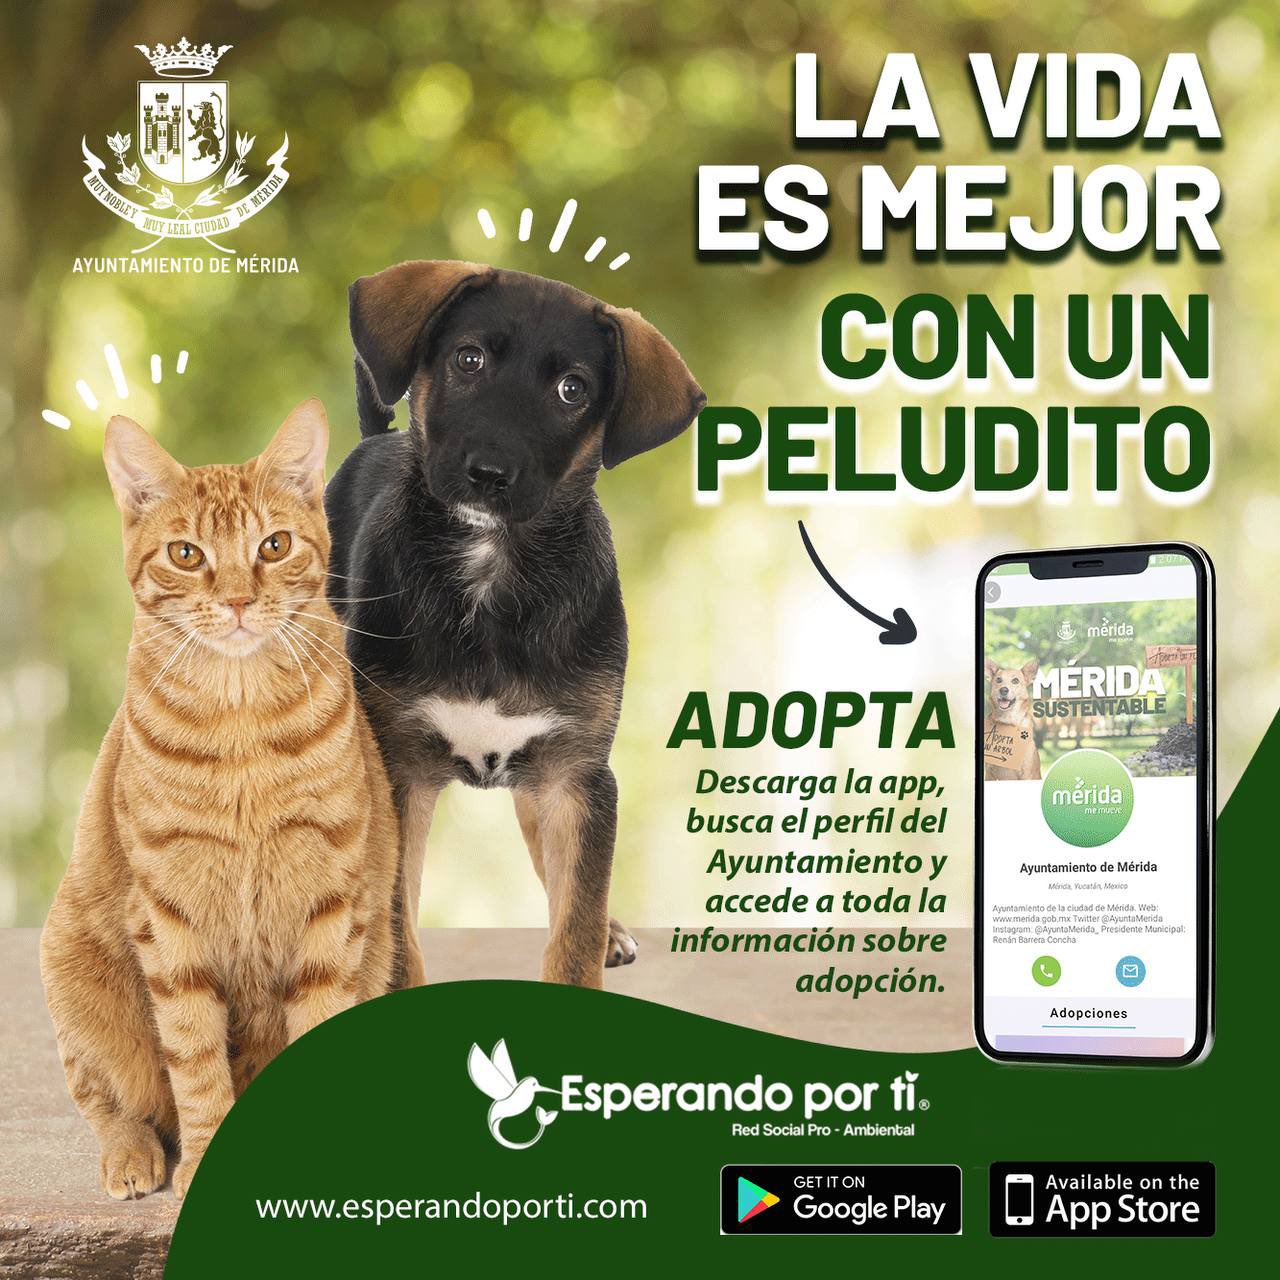 Con la app “Esperando por ti”, Mérida promueve la adopción de perros y gatos